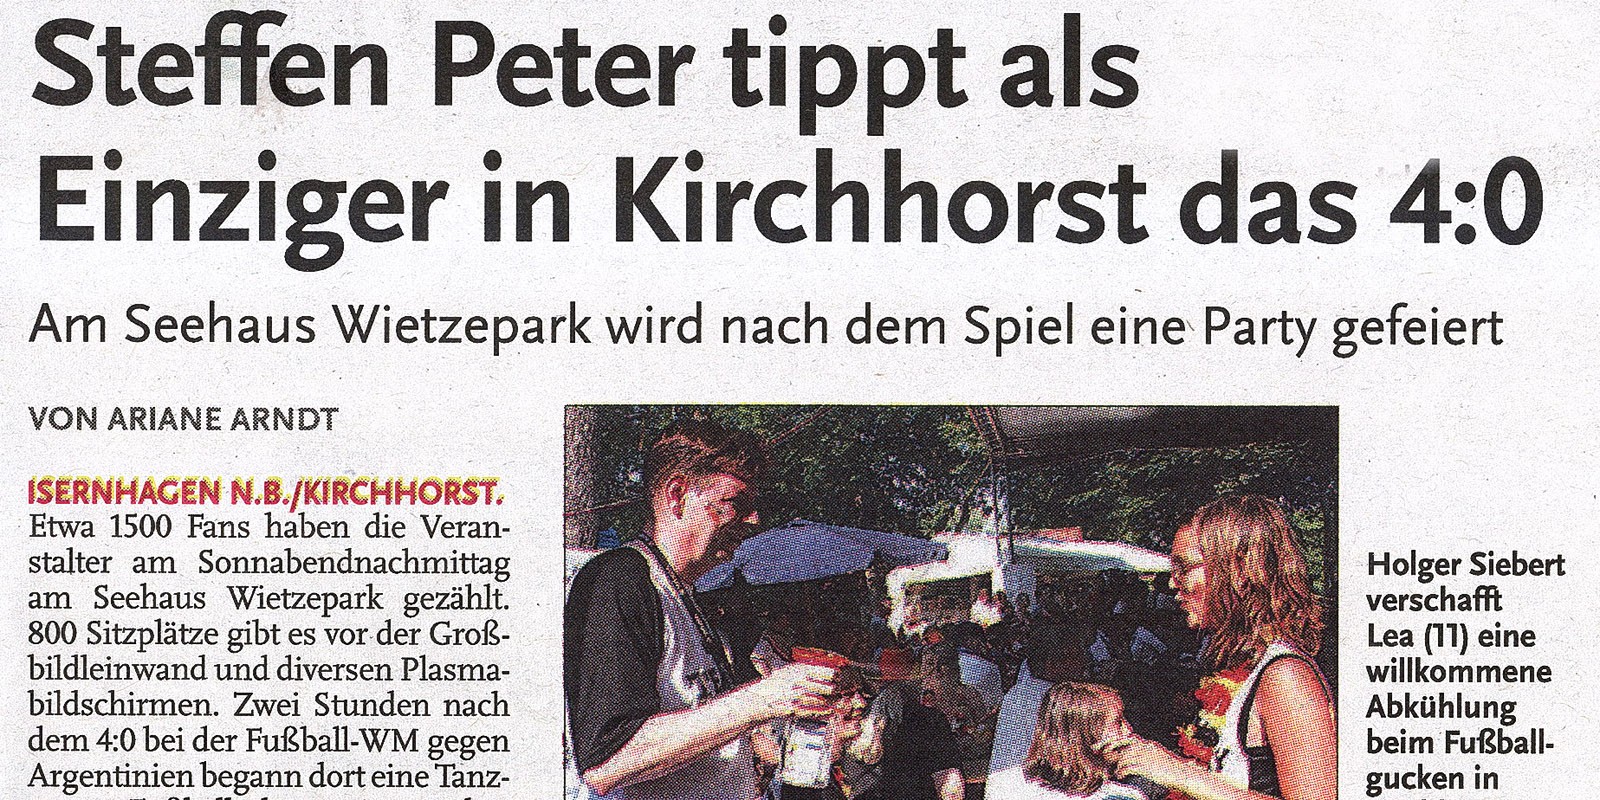 Steffen Peter tippt als Einziger in Kirchhorst das 4:0